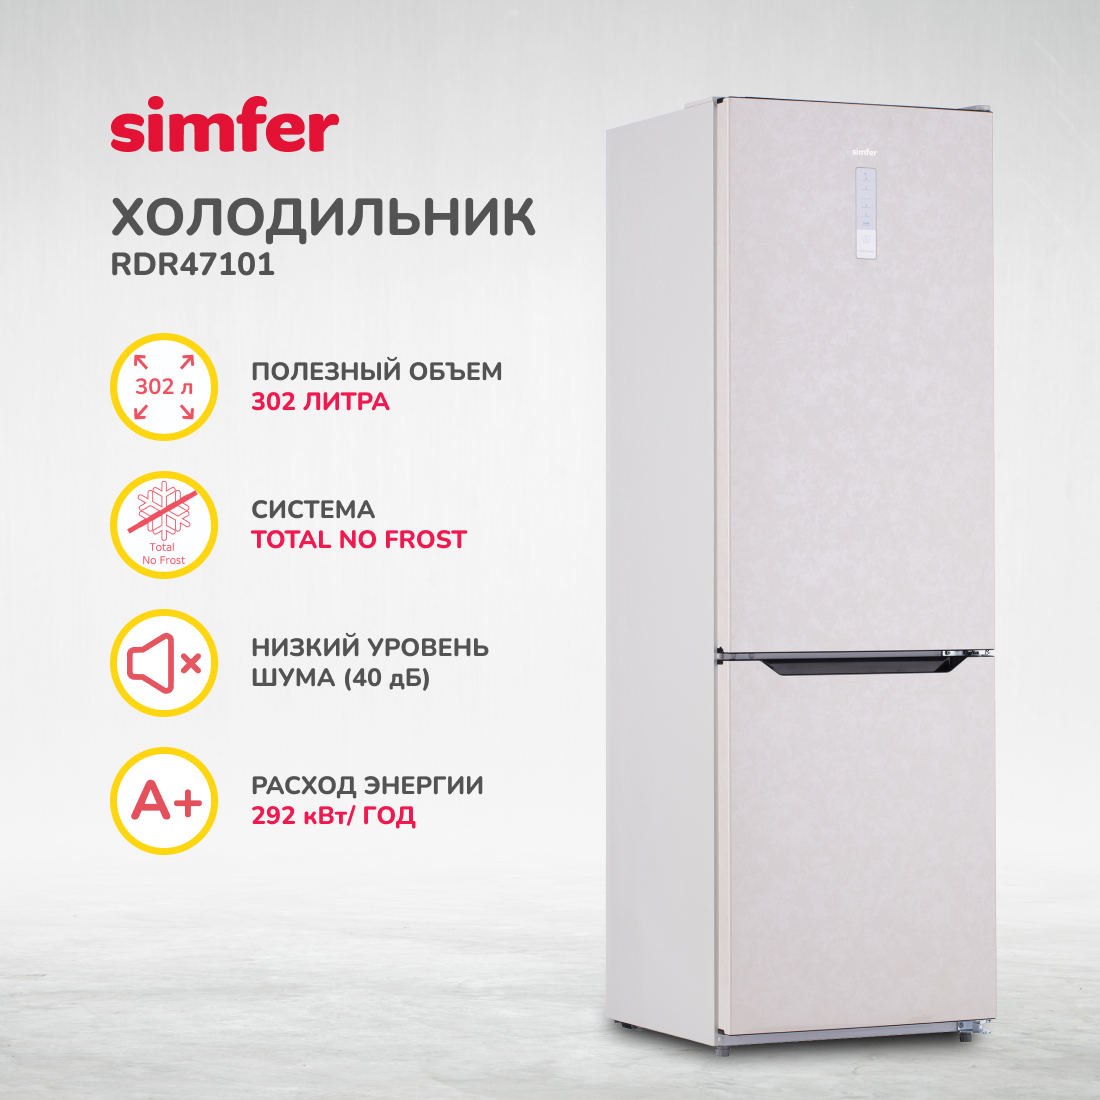 Холодильник Simfer RDR47101, No Frost, двухкамерный, 302 л, цвет бежевый - фото 1